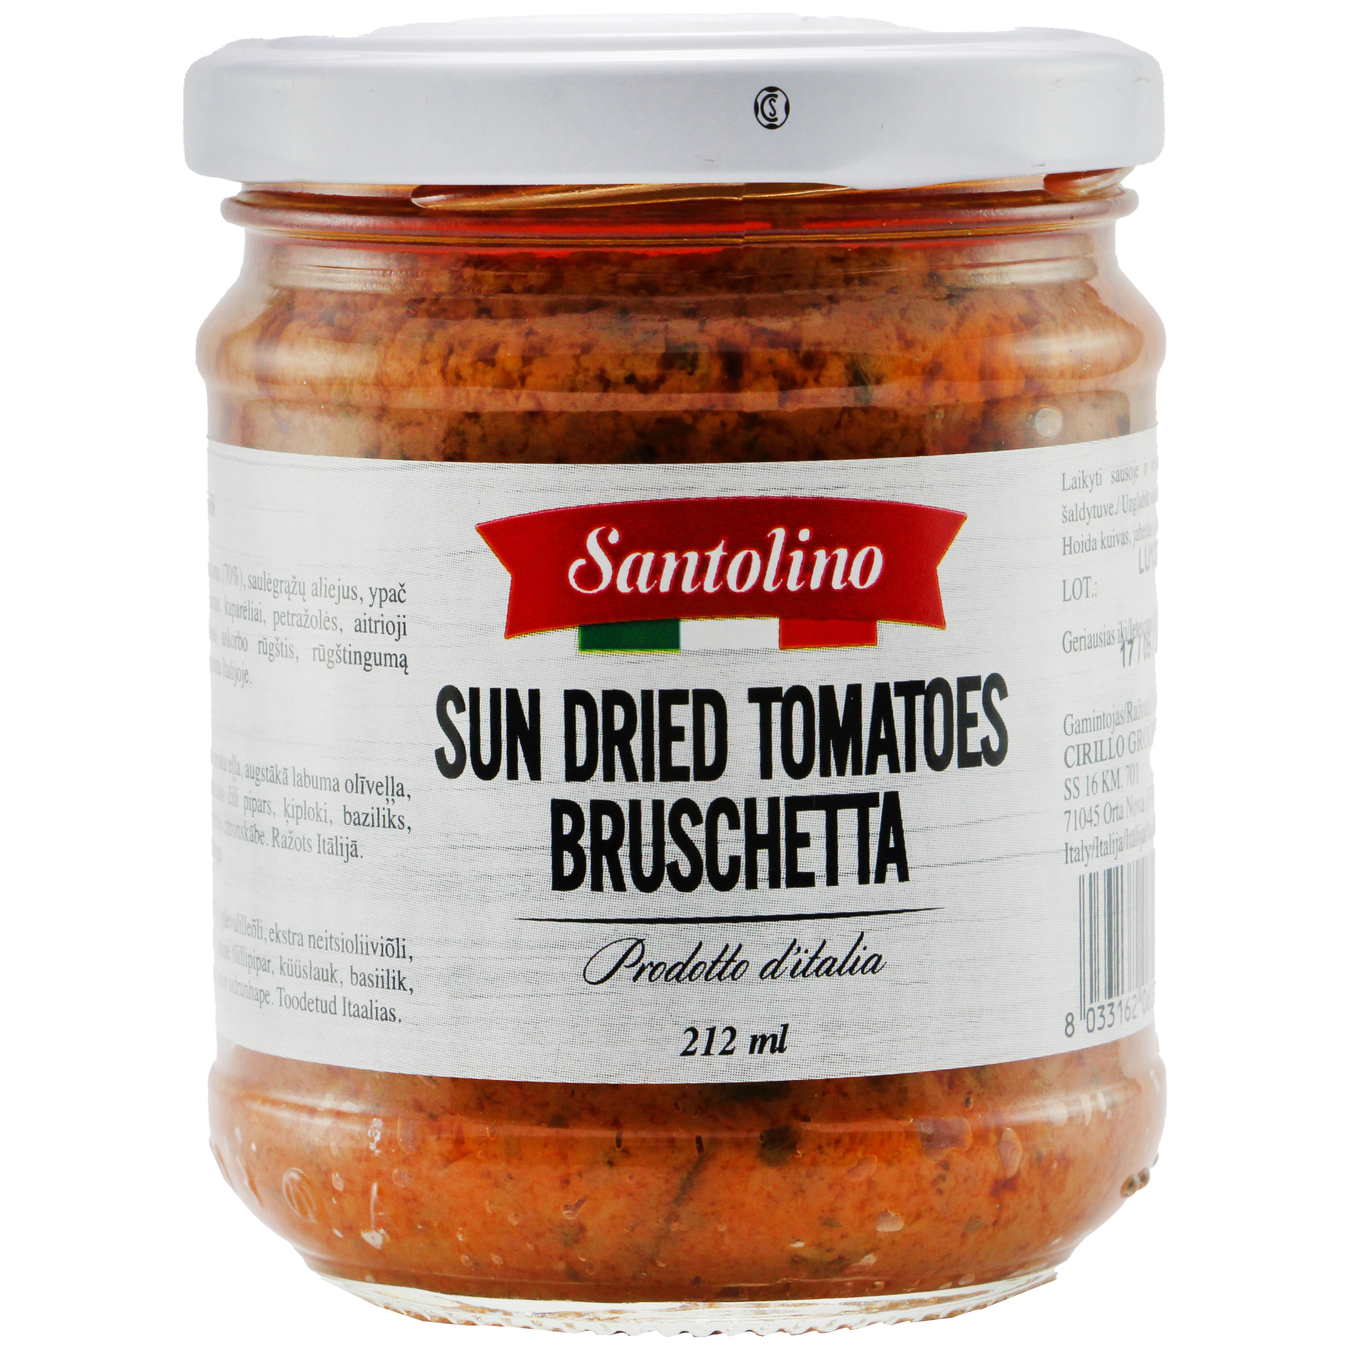 Santolino Bruschettа Sun Dried Tomatoes 212ml